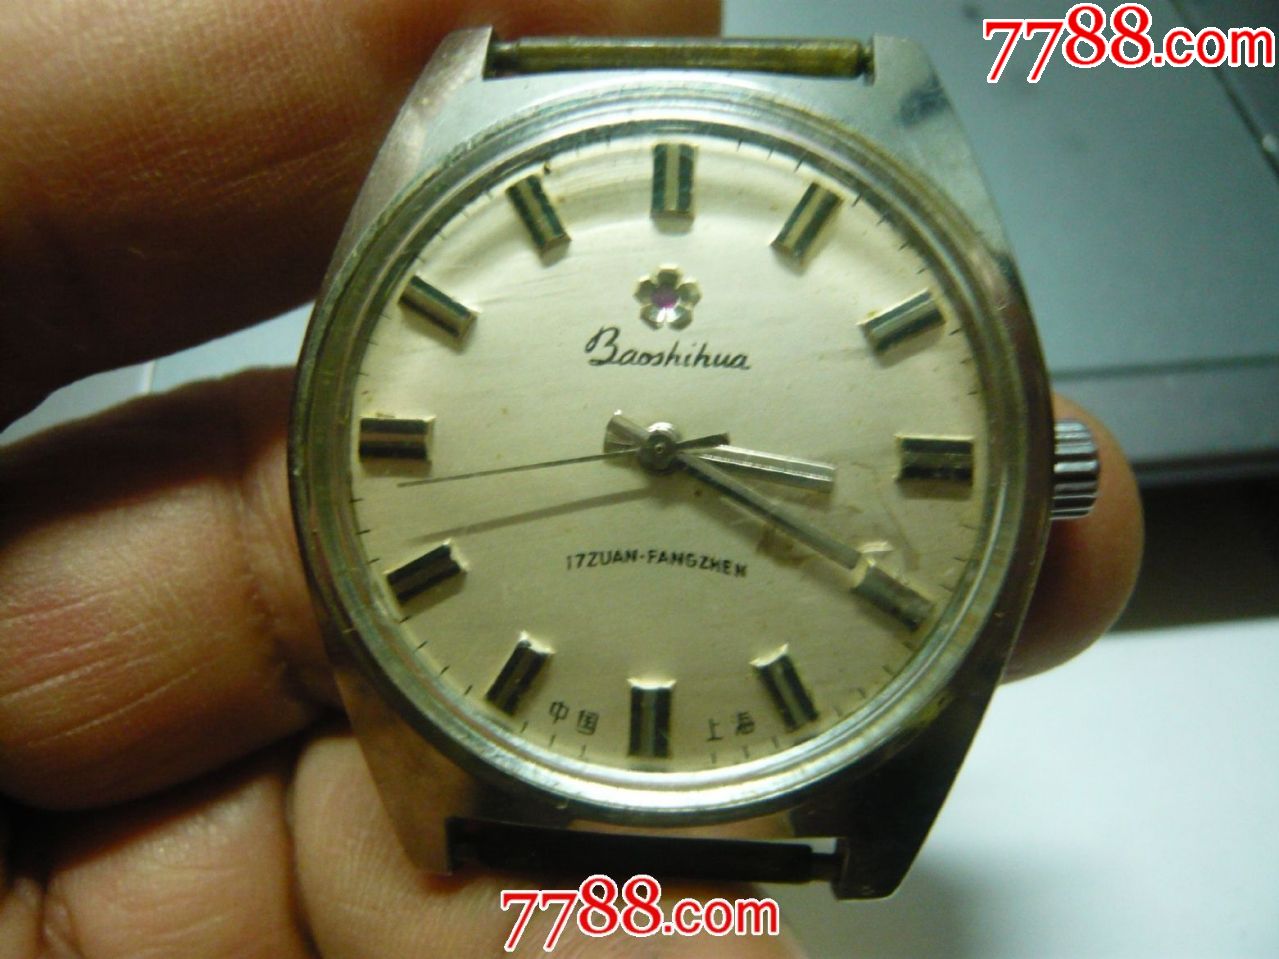 国产上海"宝石花"老手表